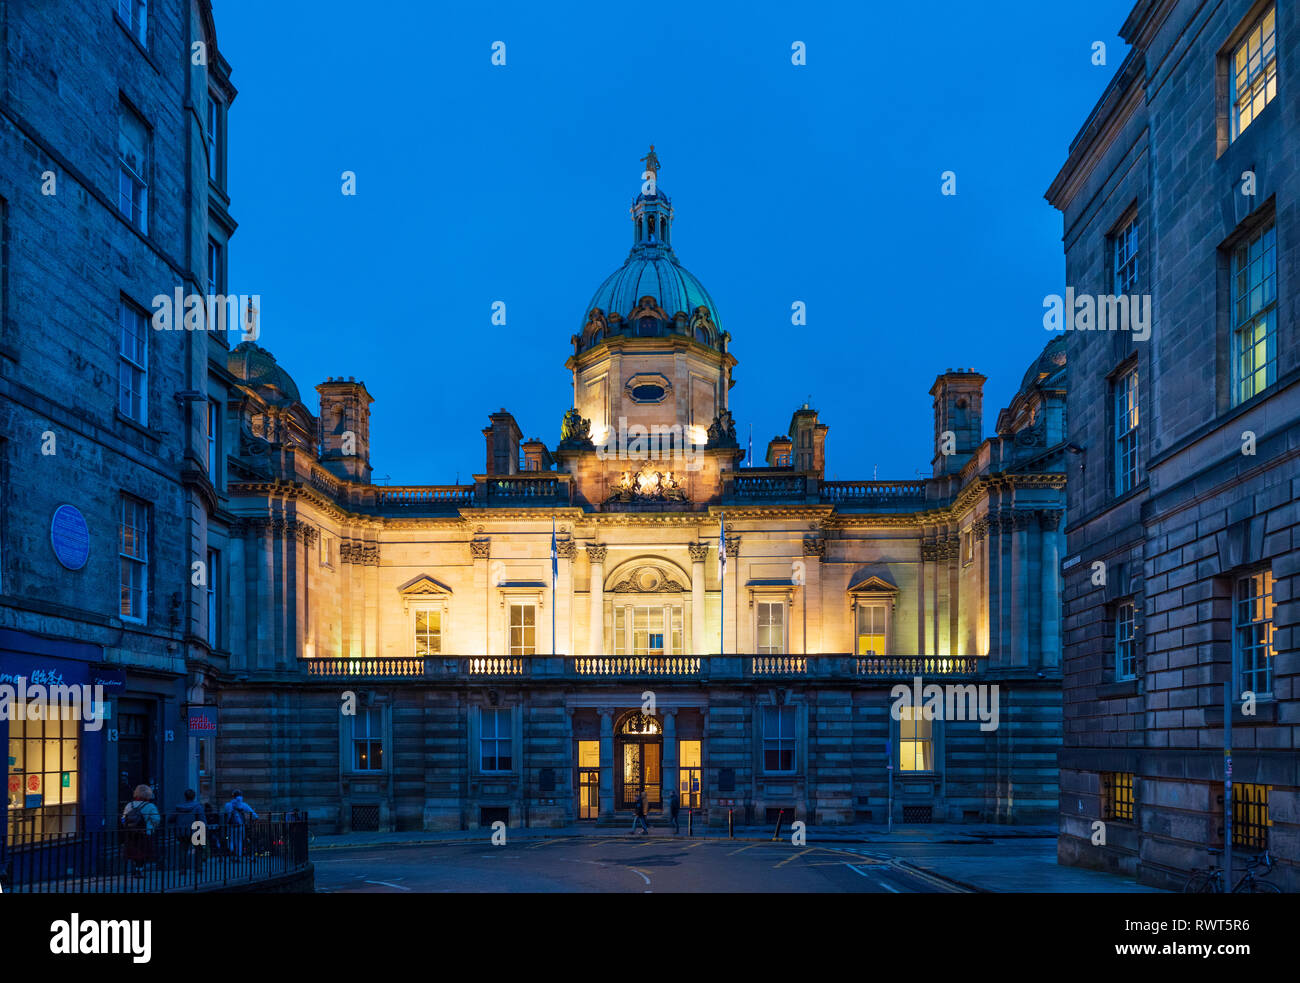 Vista nocturna de la Sede Escocesa de Lloyds Banking Group en el montículo en Edimburgo construido en 1806 como sede del Banco de Escocia, Reino Unido Foto de stock